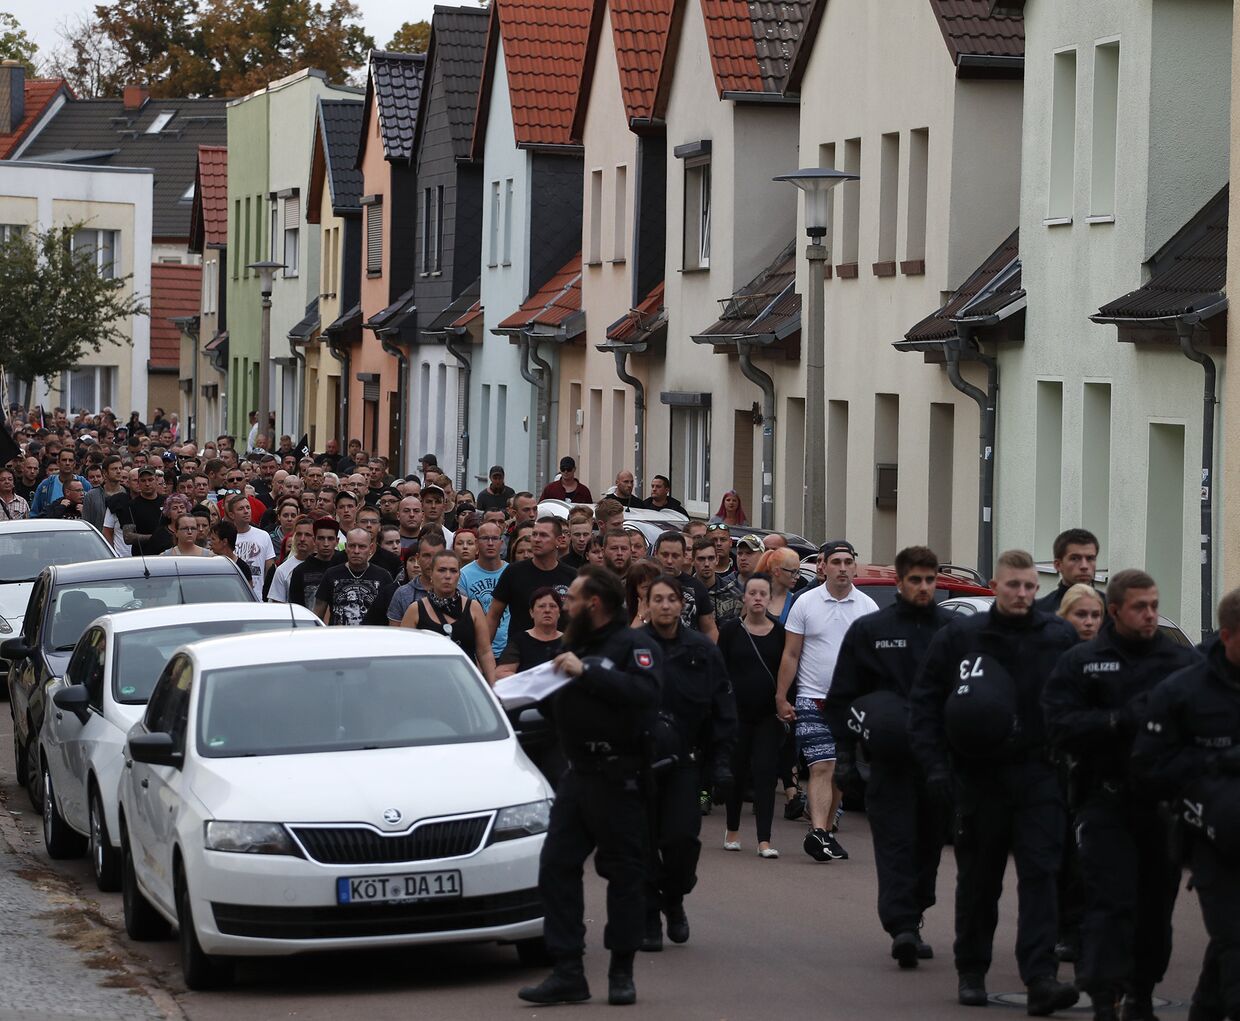 Участники траурного марша в Кетене, Германия